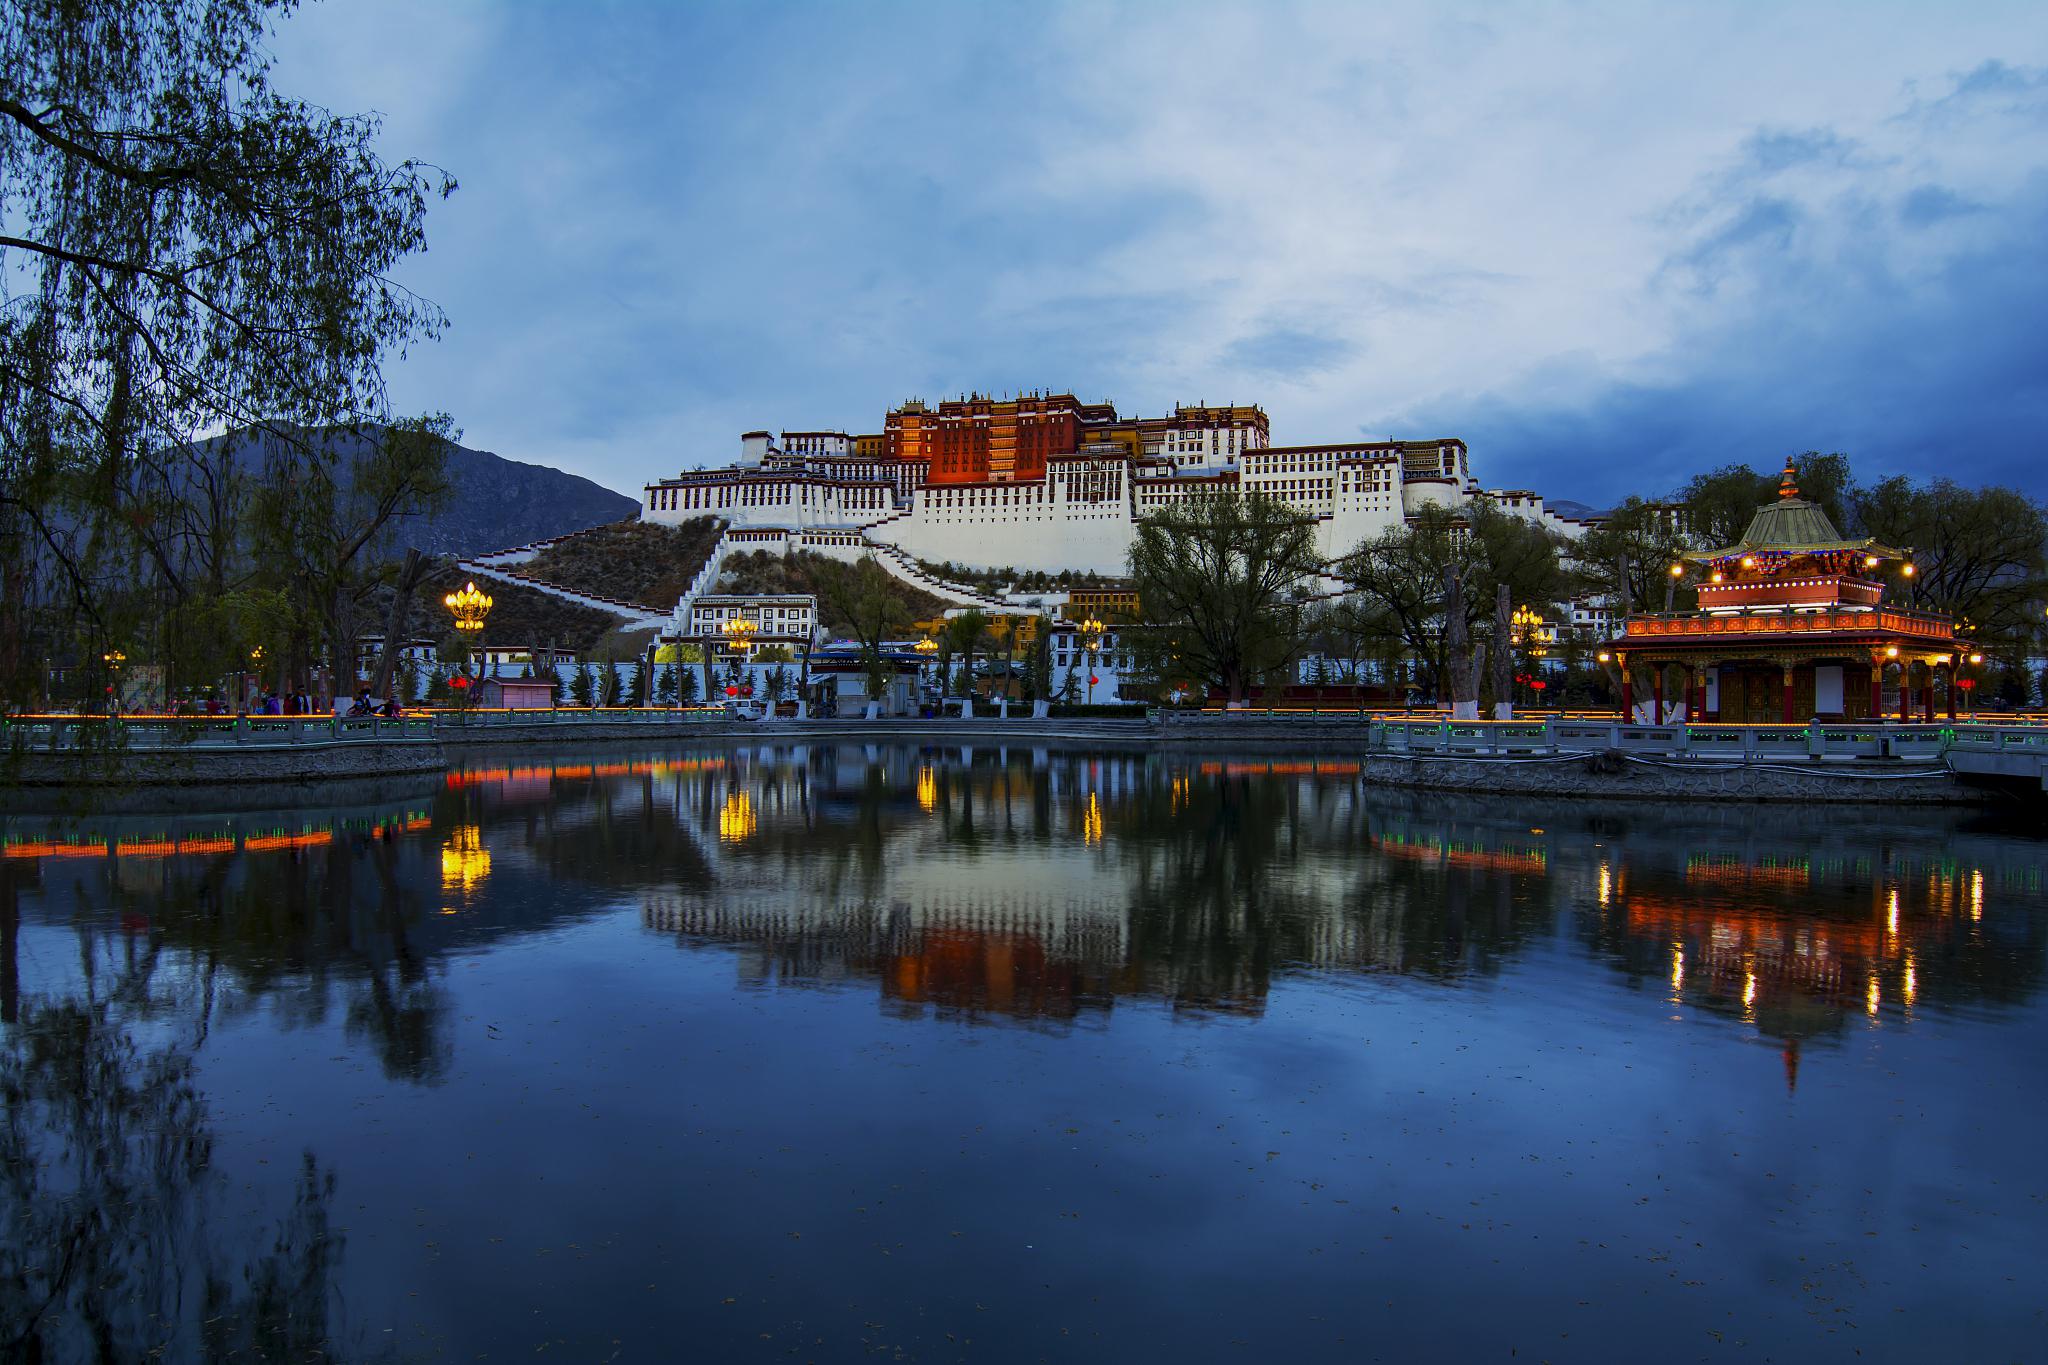 如何预约布达拉宫门票 布达拉宫是西藏的著名景点之一,也是游客们必游